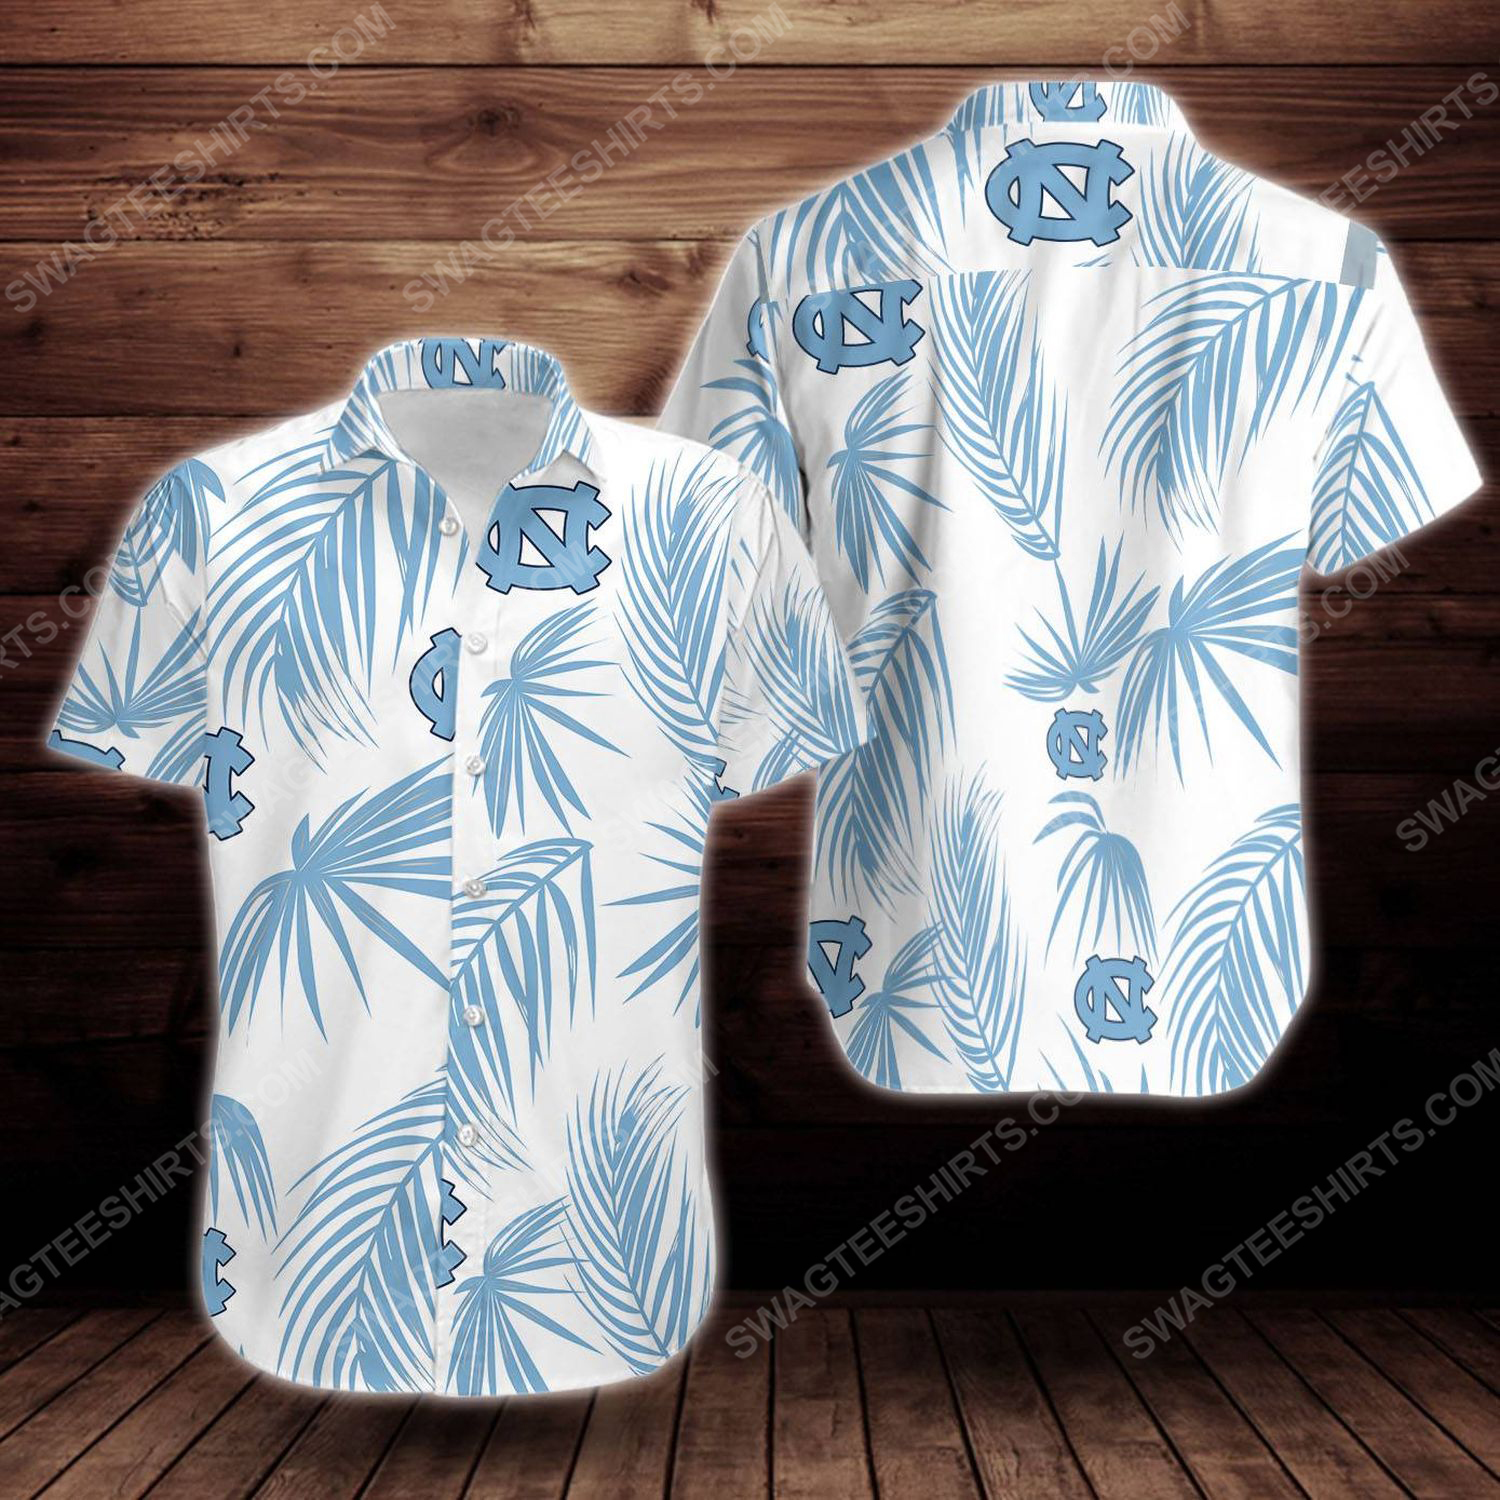 [special edition] North carolina tar heels short sleeve hawaiian shirt – maria